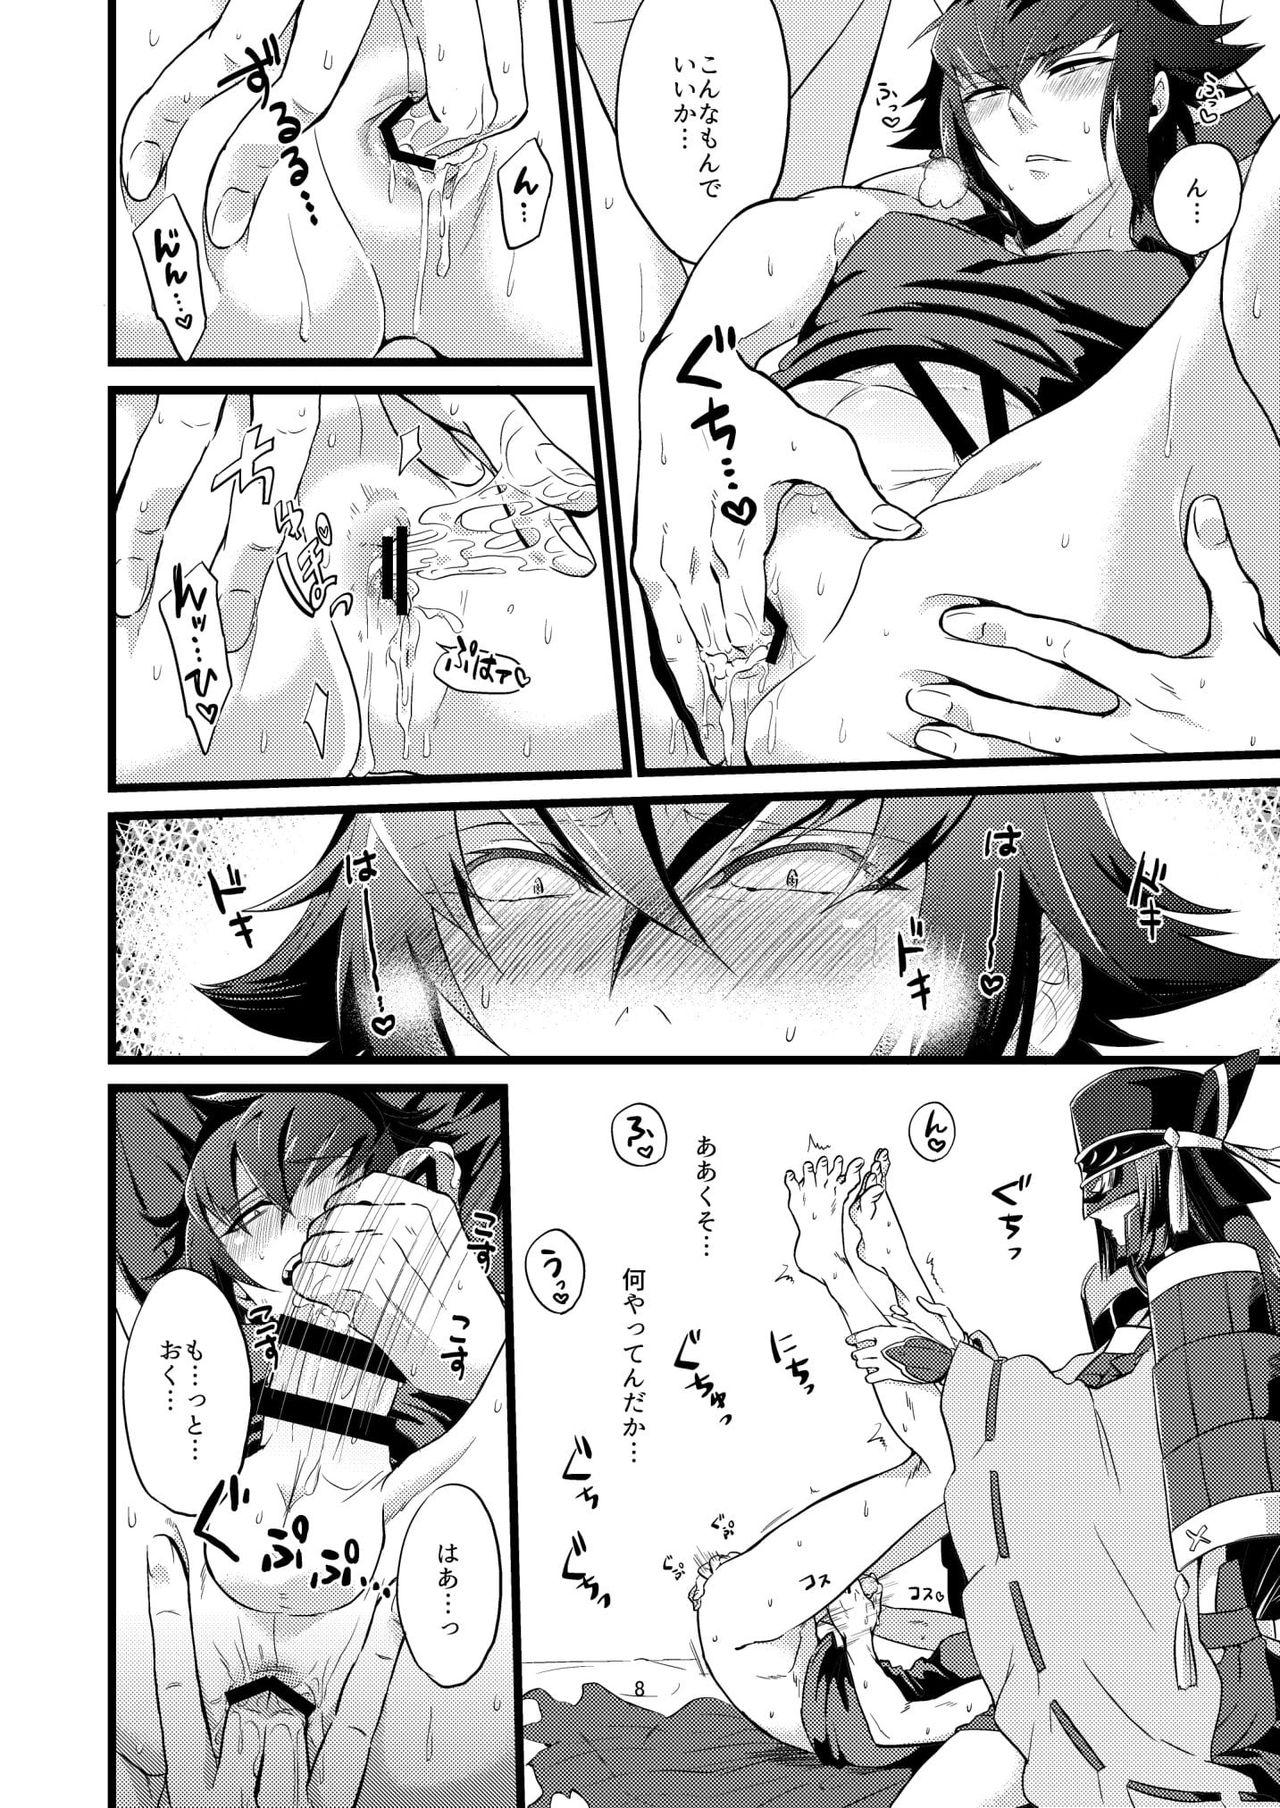 Muscles Shounin Itadakimashita 2 - Re creators Punished - Page 8